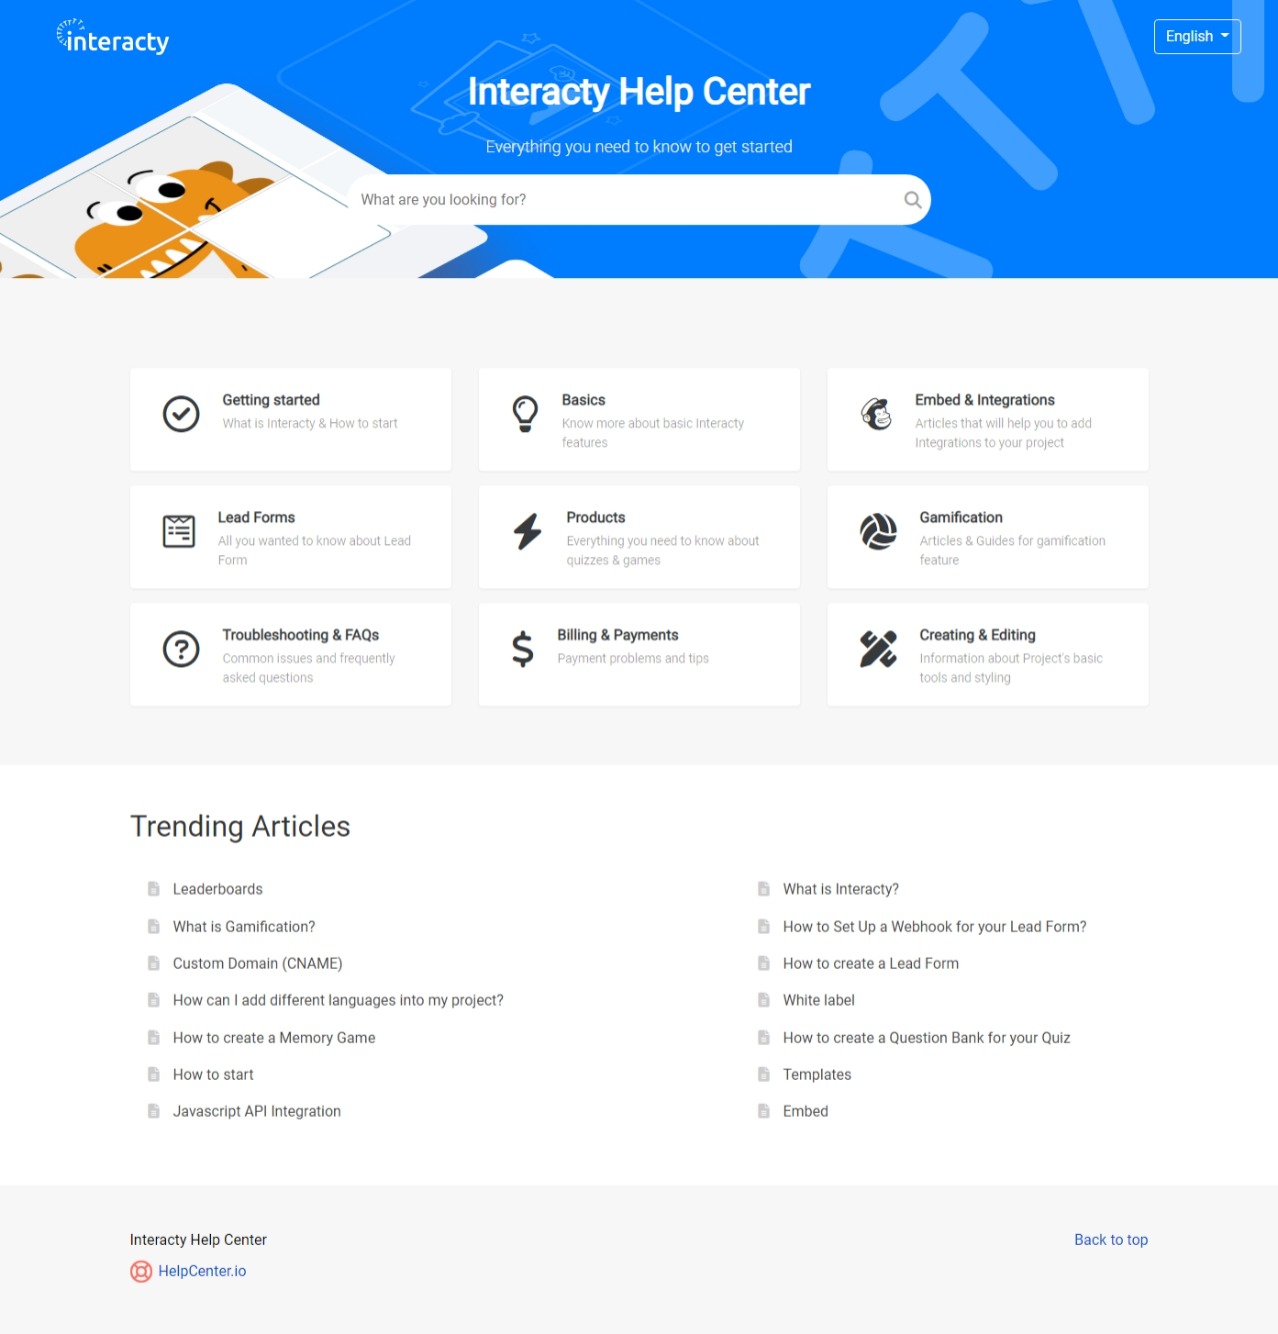 Interacty help center